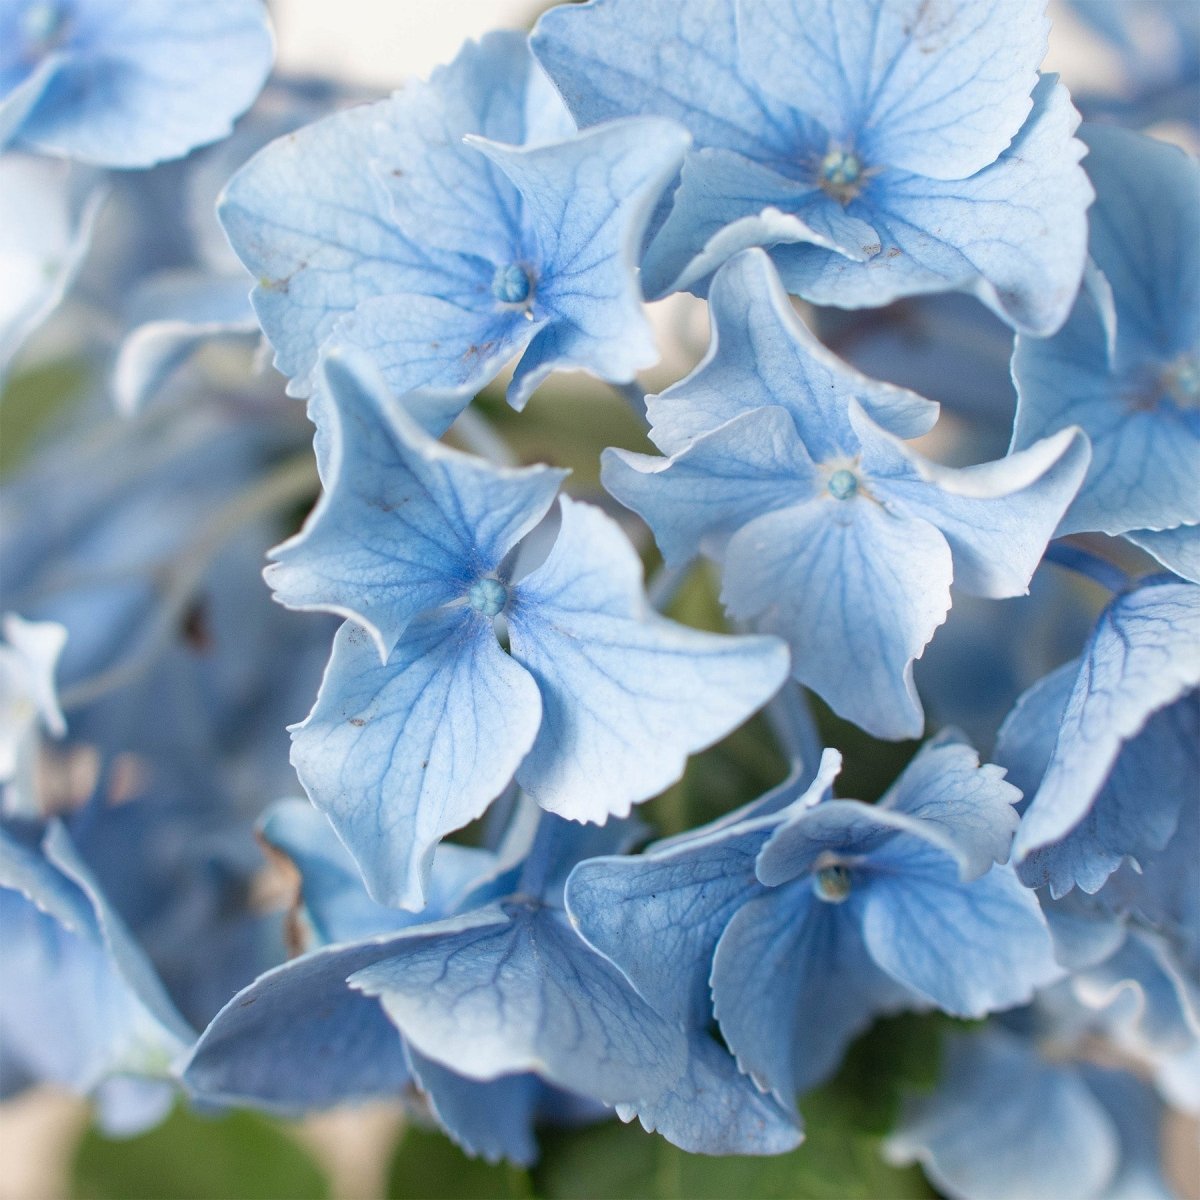 lily & onyx Blue Hydrangea - lily & onyx